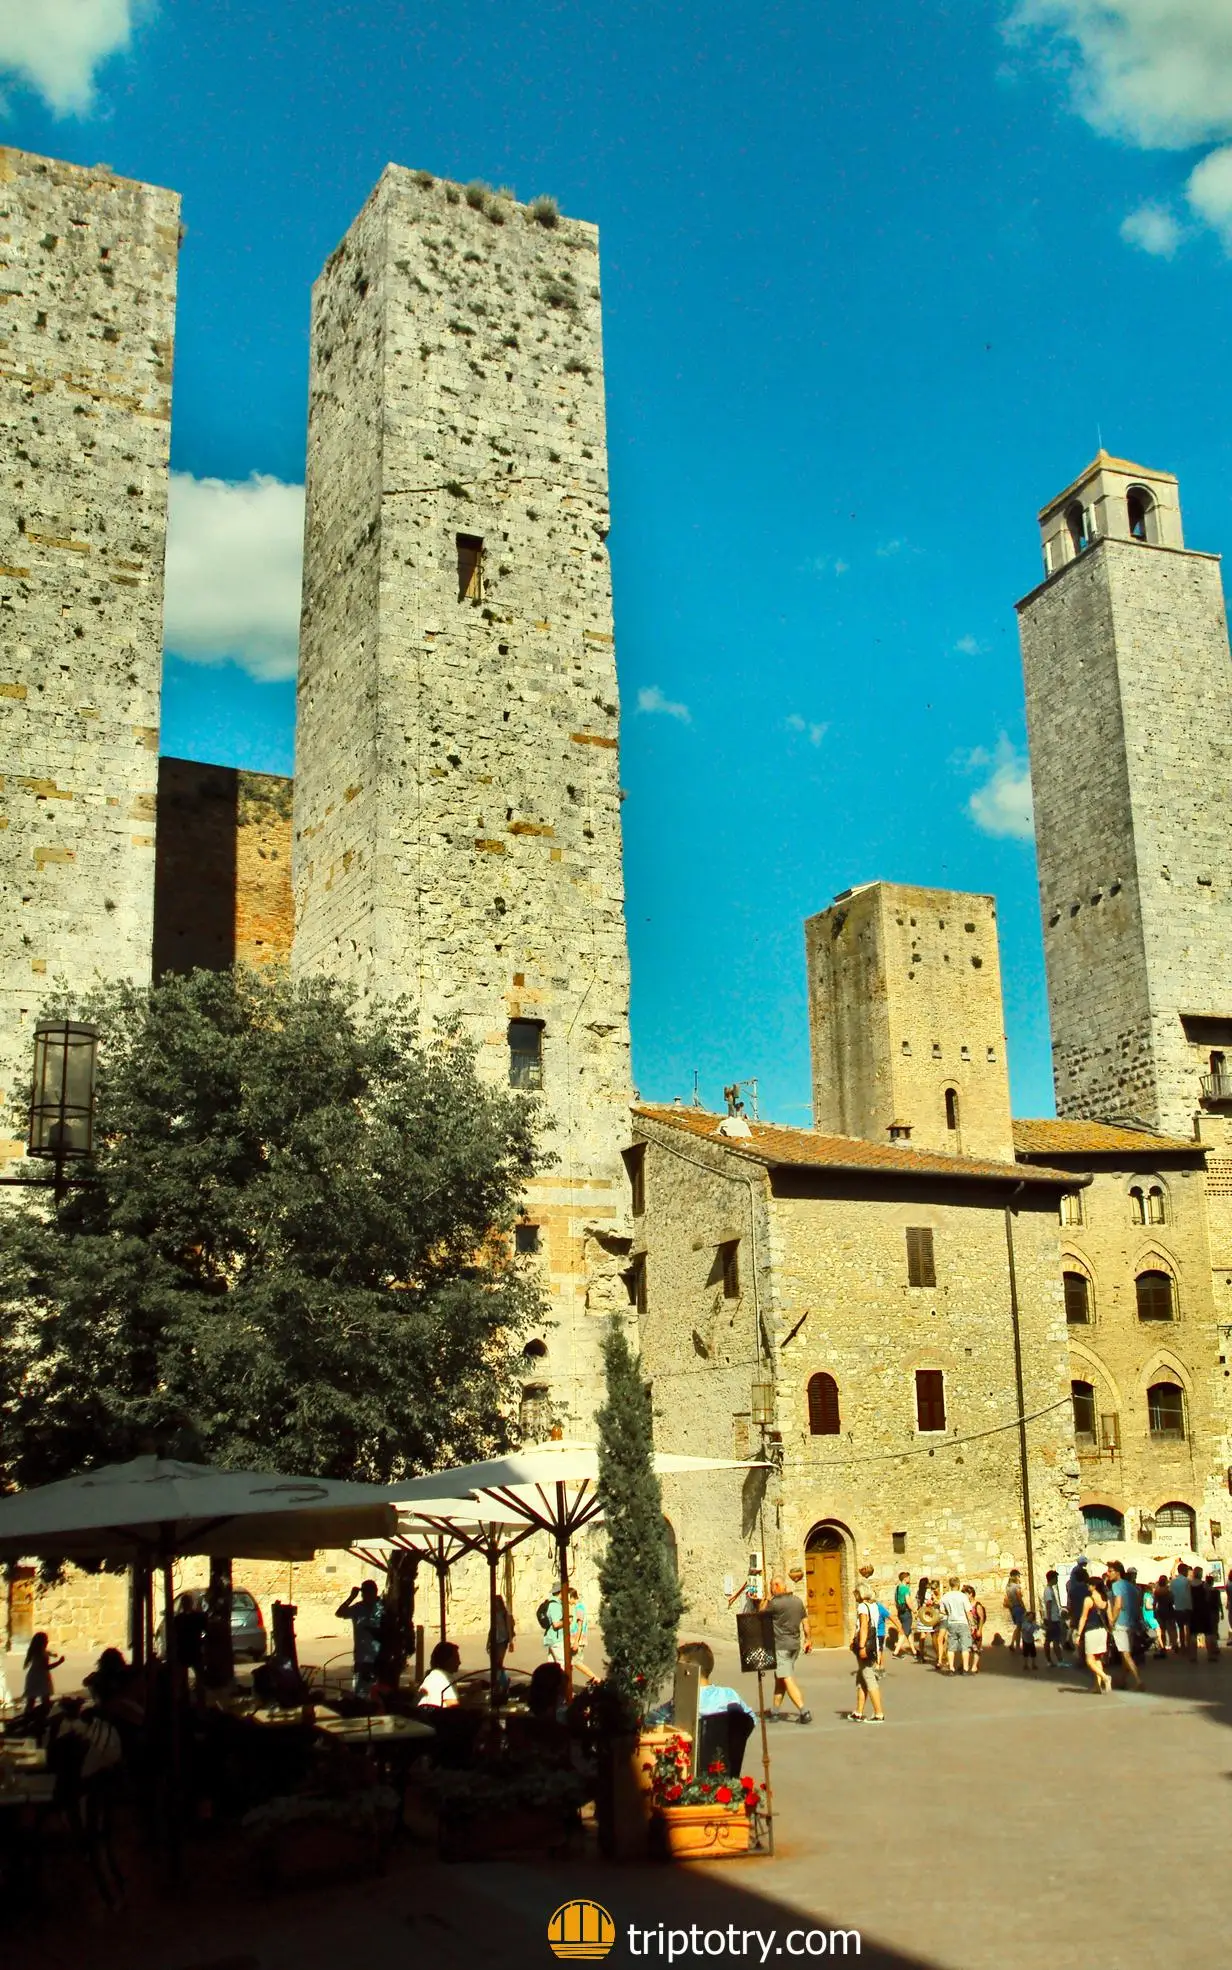 Visitare il Chianti - itinerario Chianti - Le Torri in pietra nel centro storico di San Gimignano - Chianti Tuscany travel itinerary